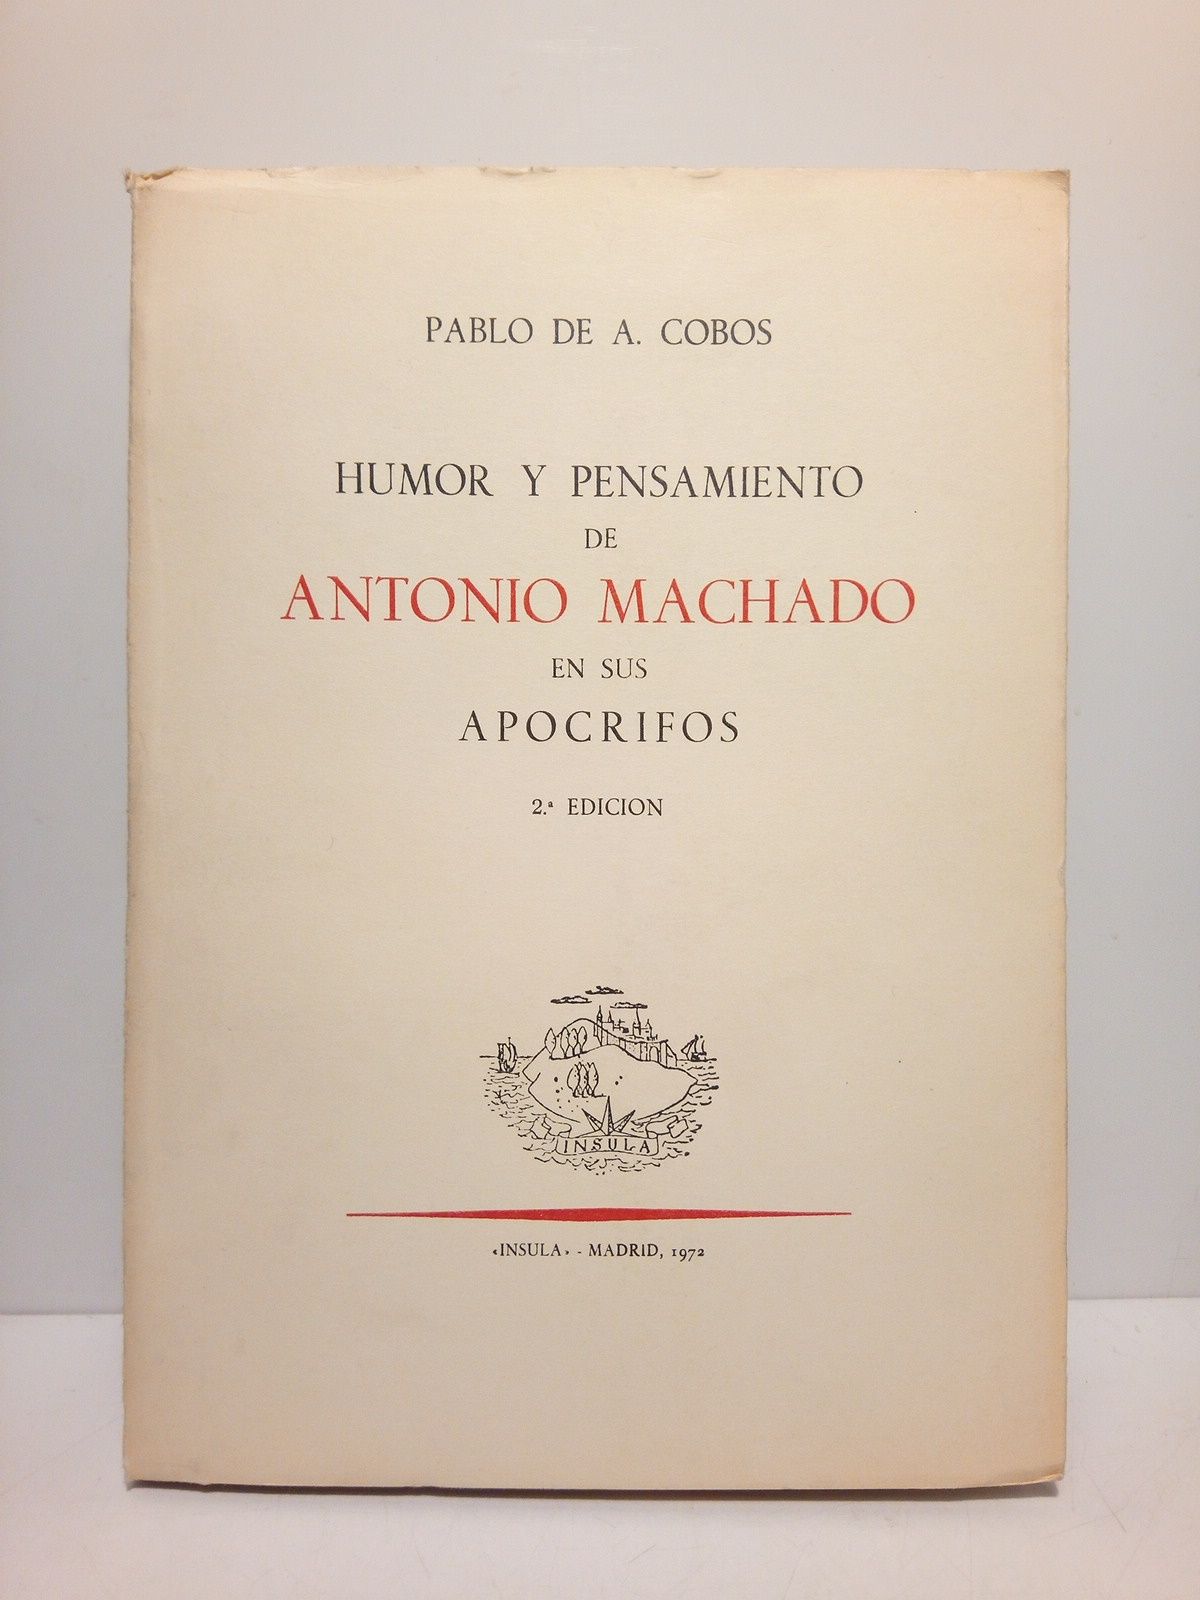 COBOS, Pablo A. de - Humor y pensamiento de Antonio Machado en sus apcrifos